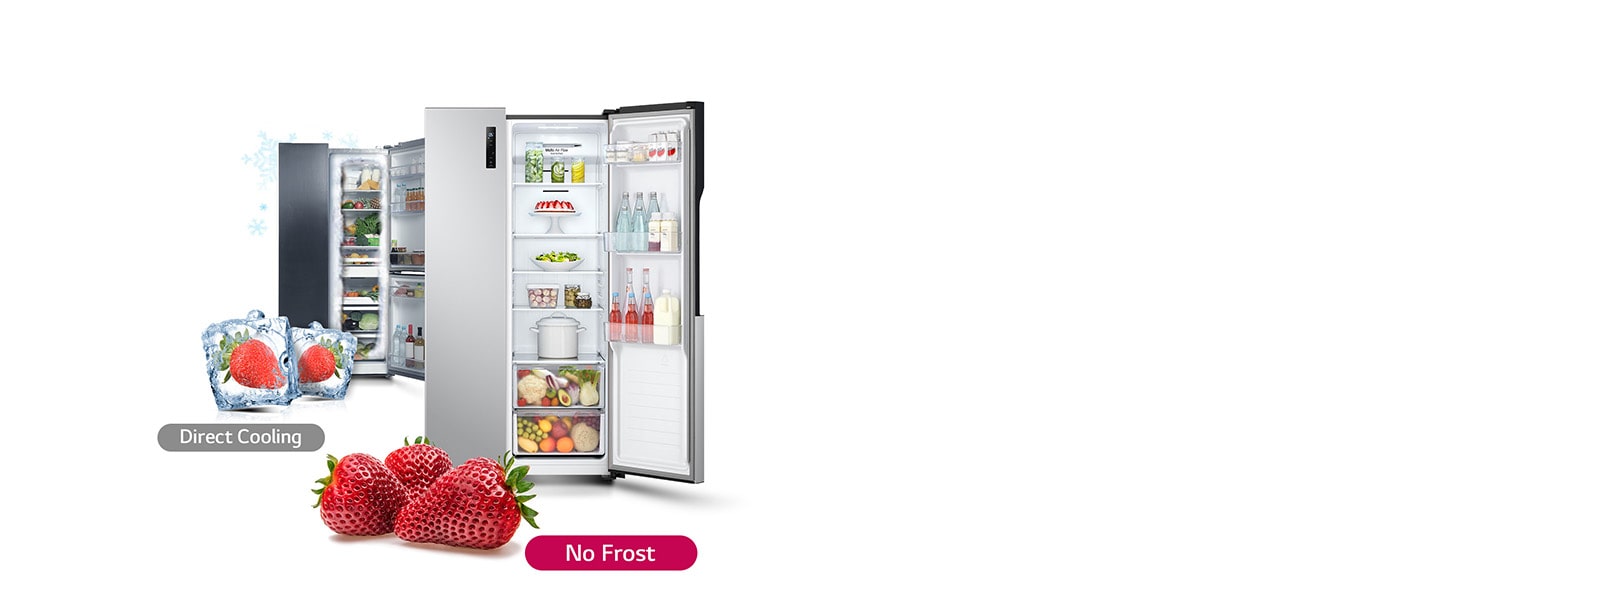 Exprimant la fonction d'un réfrigérateur sans givre avec des fraises.